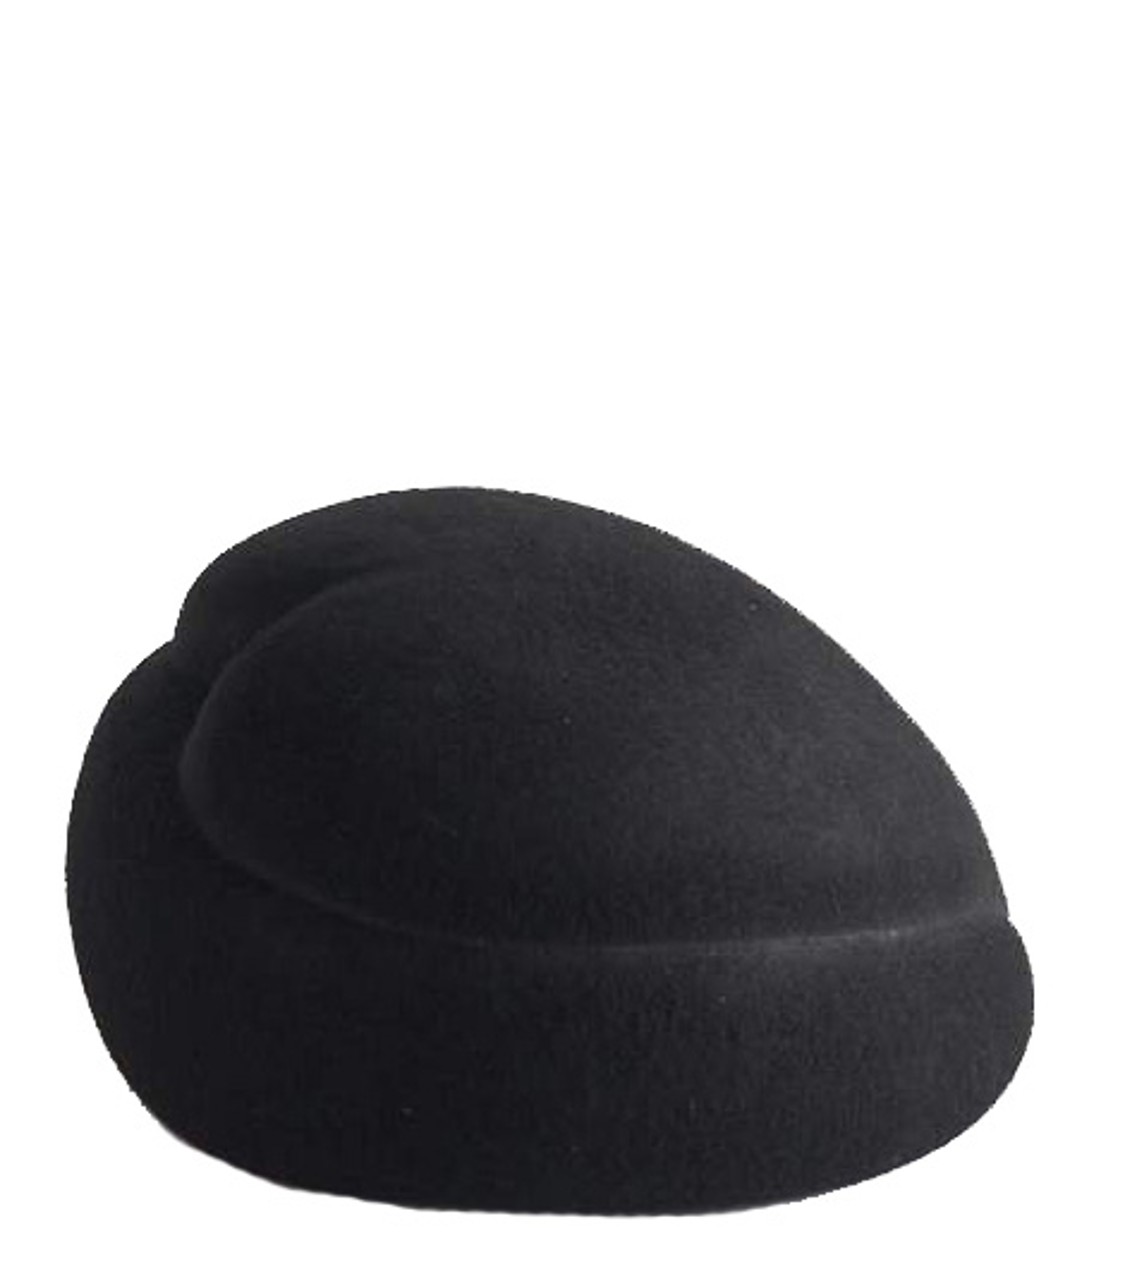 shop Flapper Sales Accessori: Accessori Flapper, cappello, modello Julie, in lana nera, caratterizzato dalla forma di cuore stilizzato.

Composizione: 100% lana. number 1948